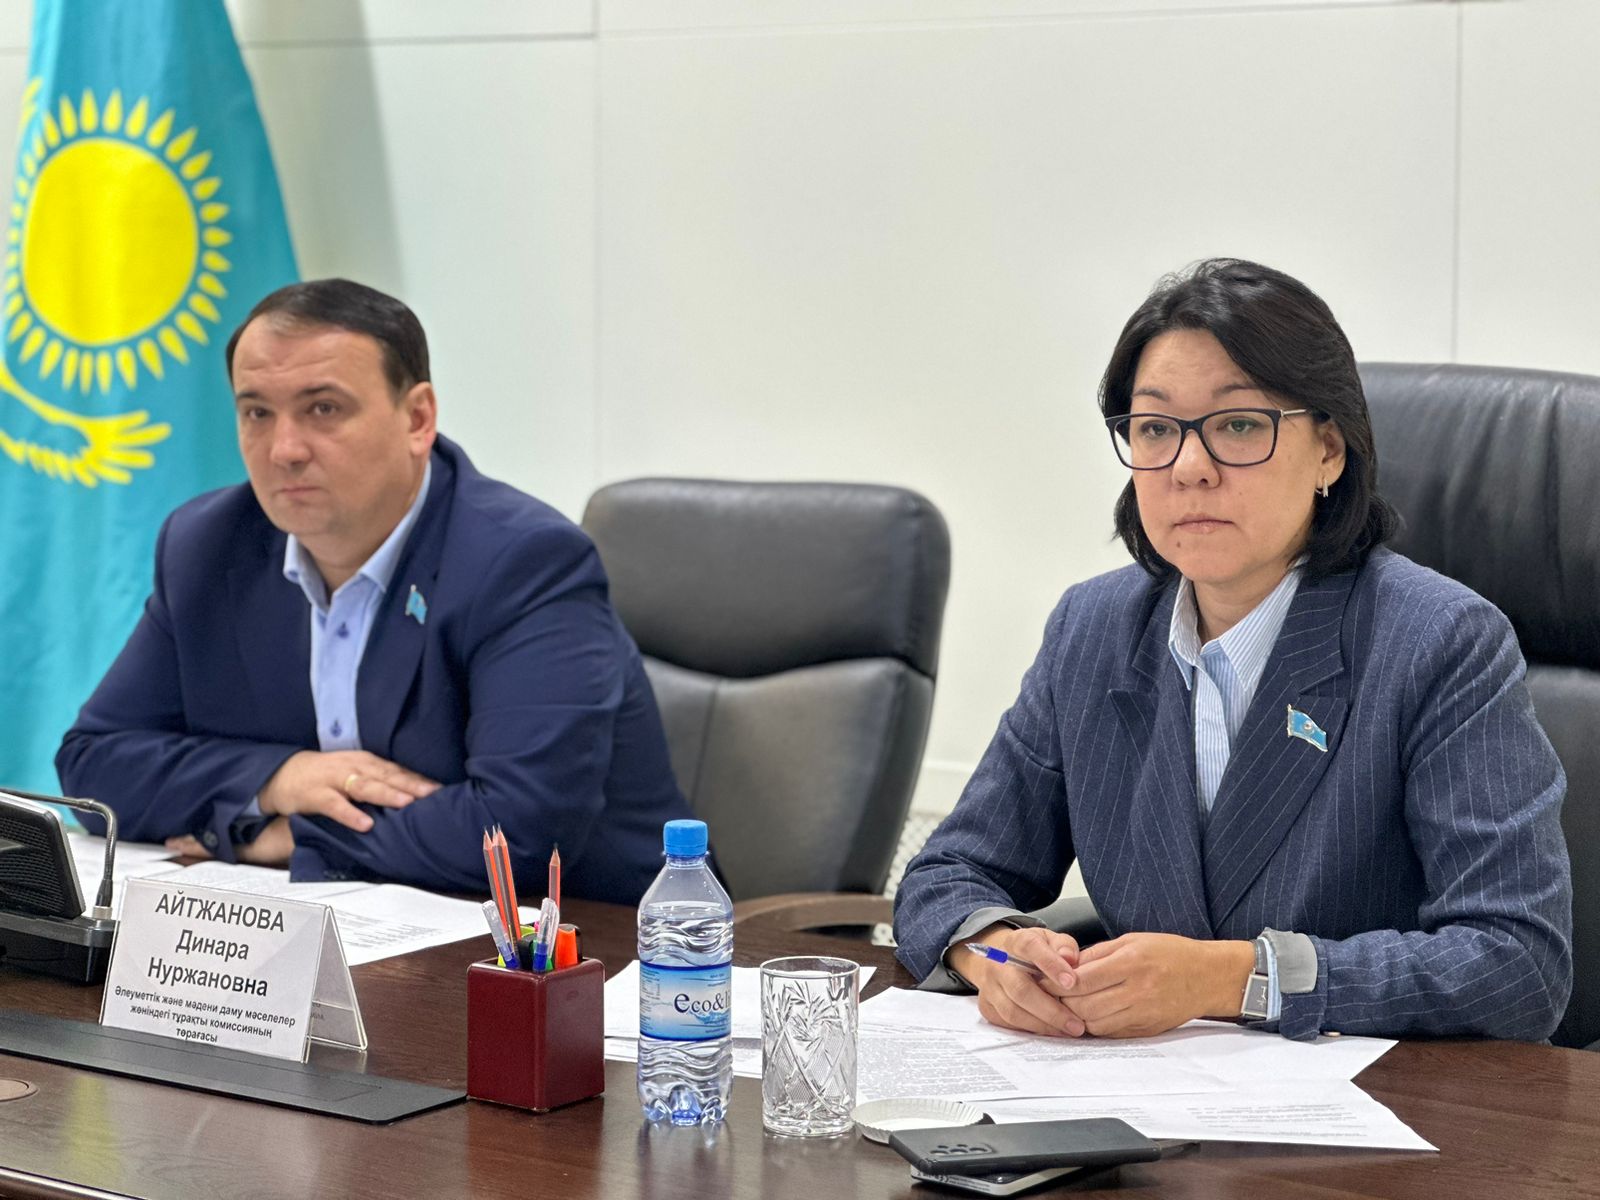 Состоялось заседание постоянной комиссии Павлодарского областного маслихата по вопросам образования, здравоохранения, культуры и социальной защиты